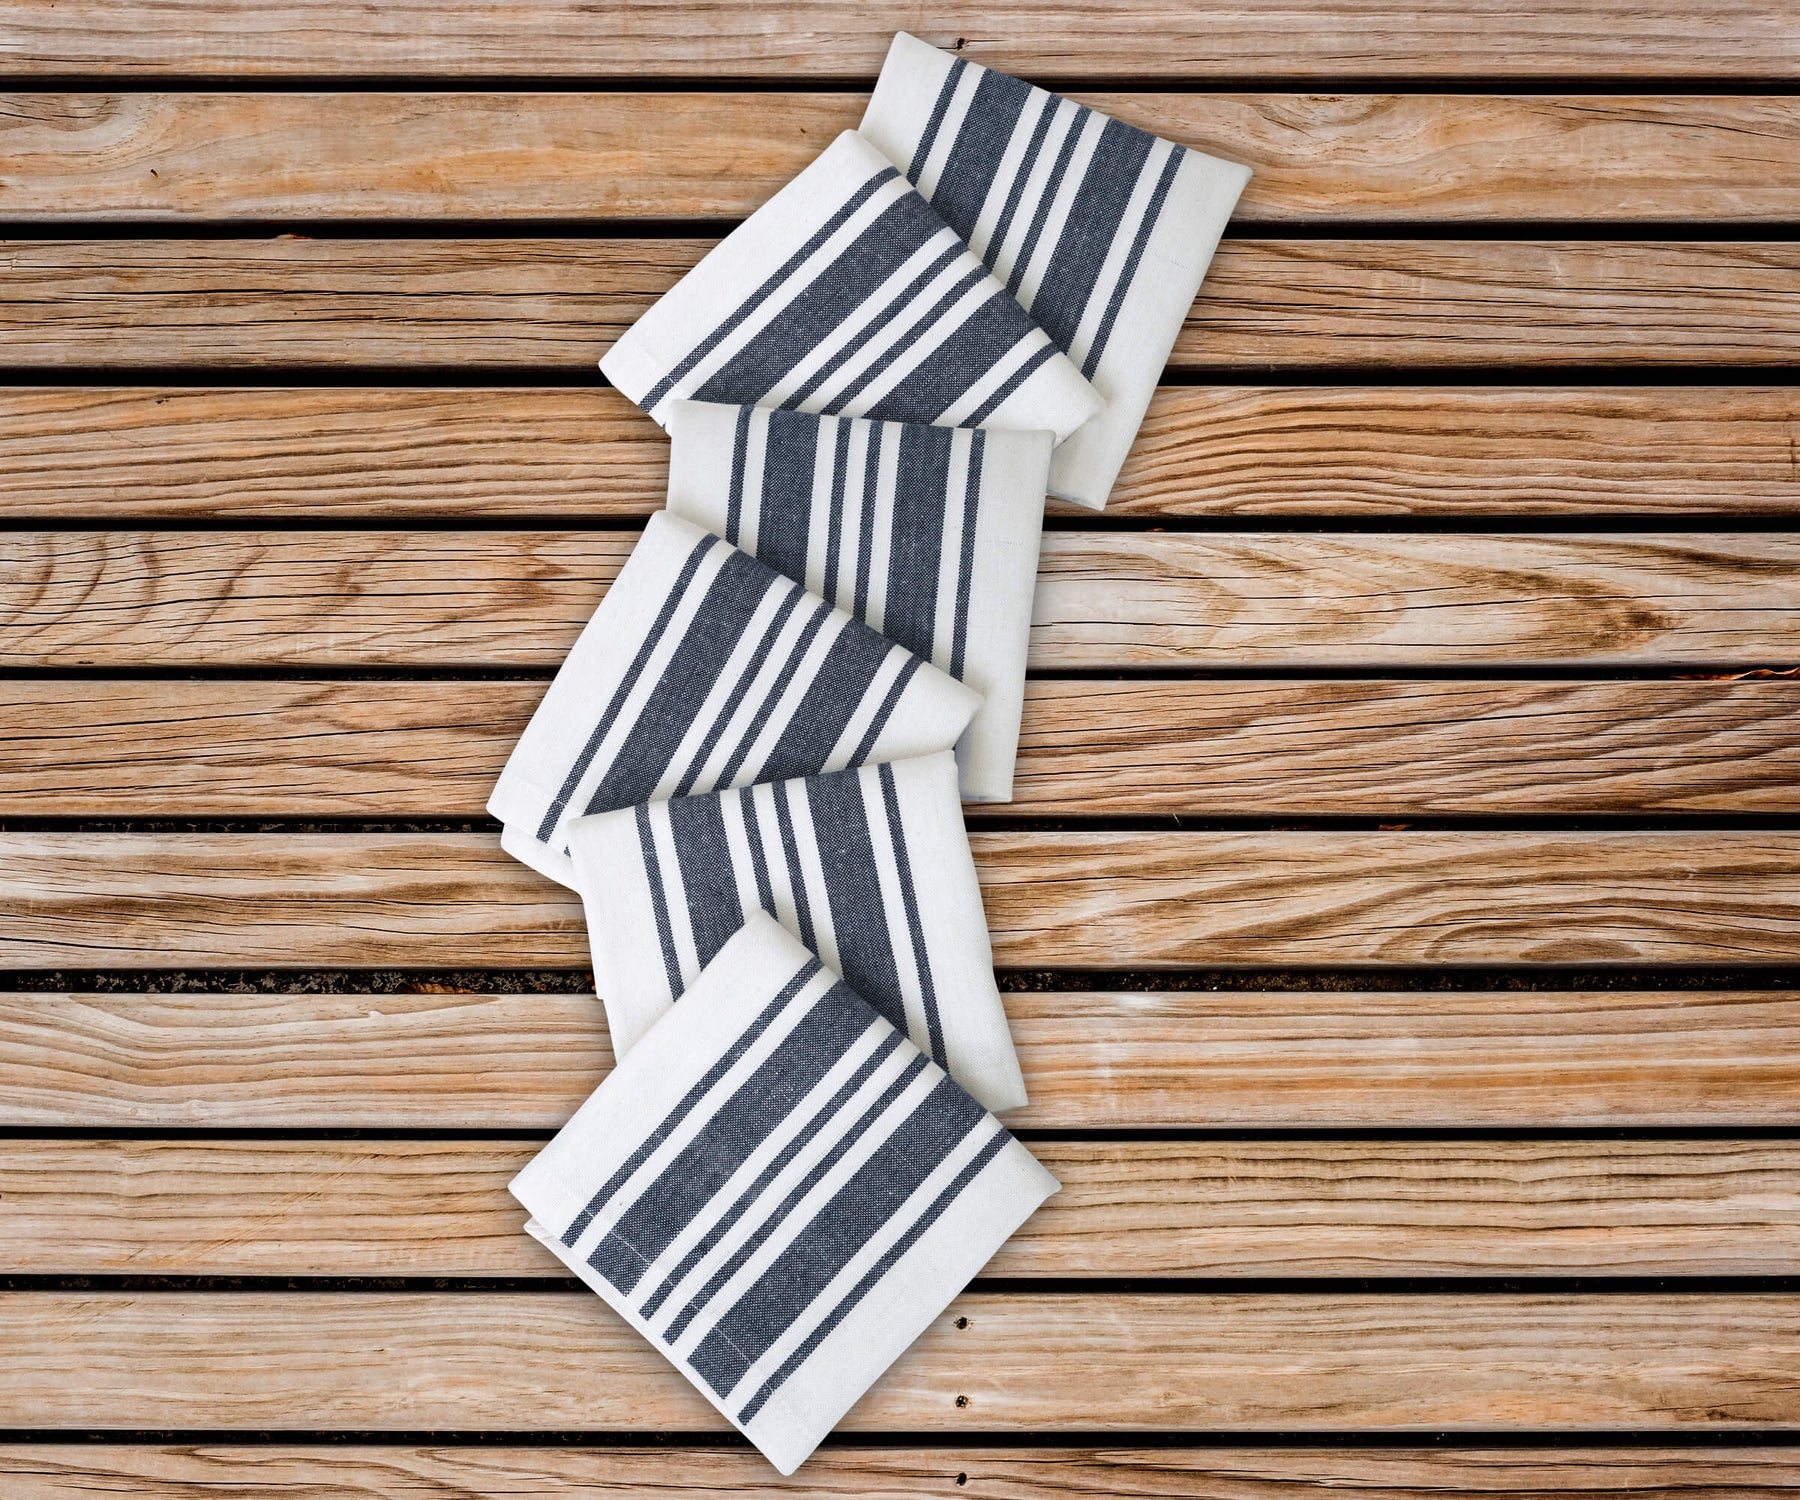 Four-piece set of striped restaurant napkins